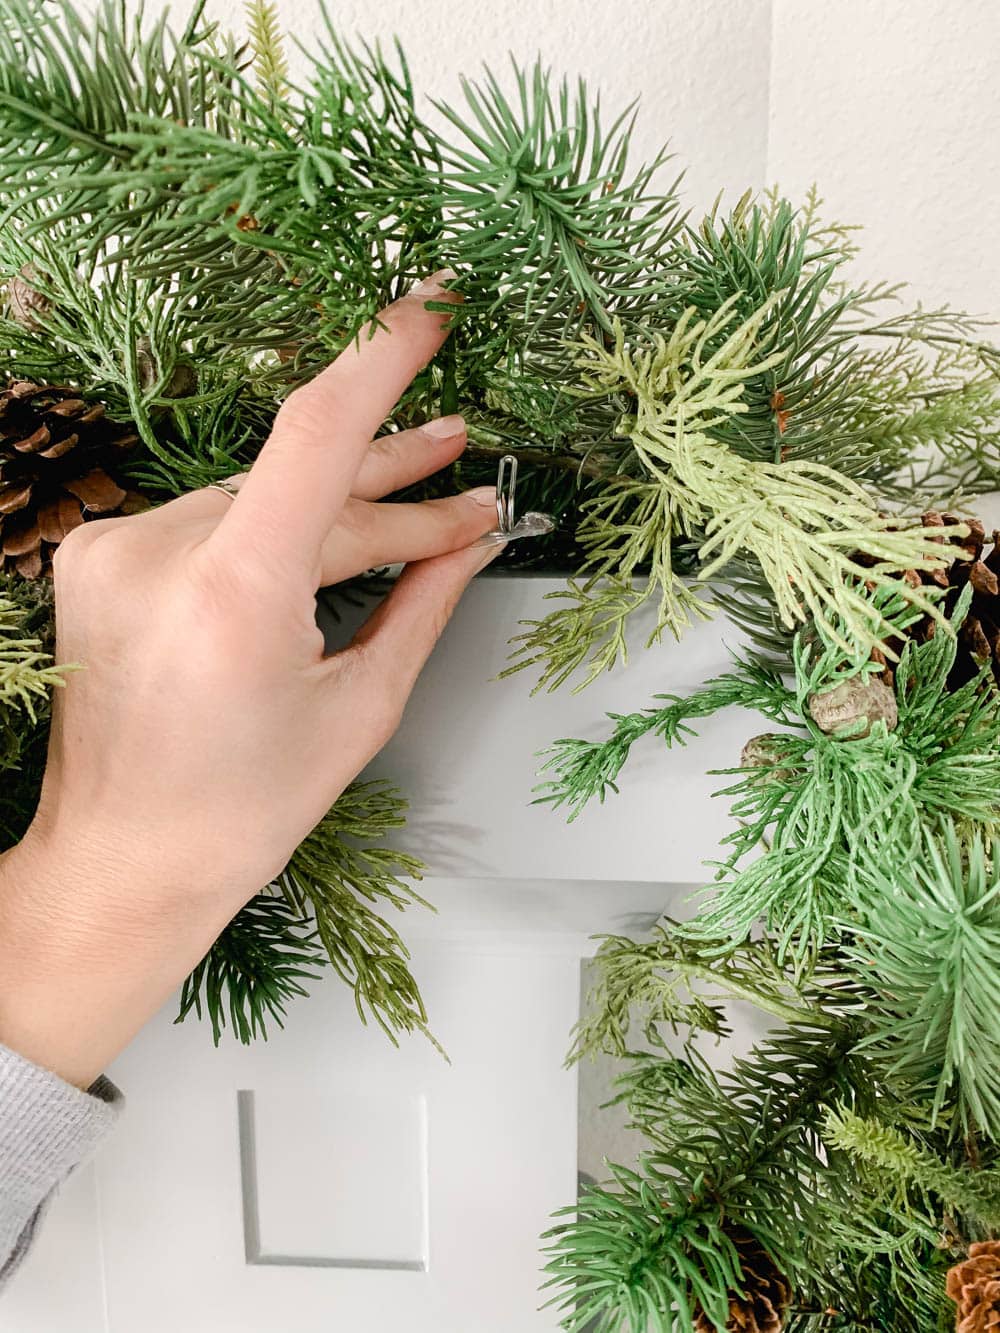 Easy ways to hang Christmas garland